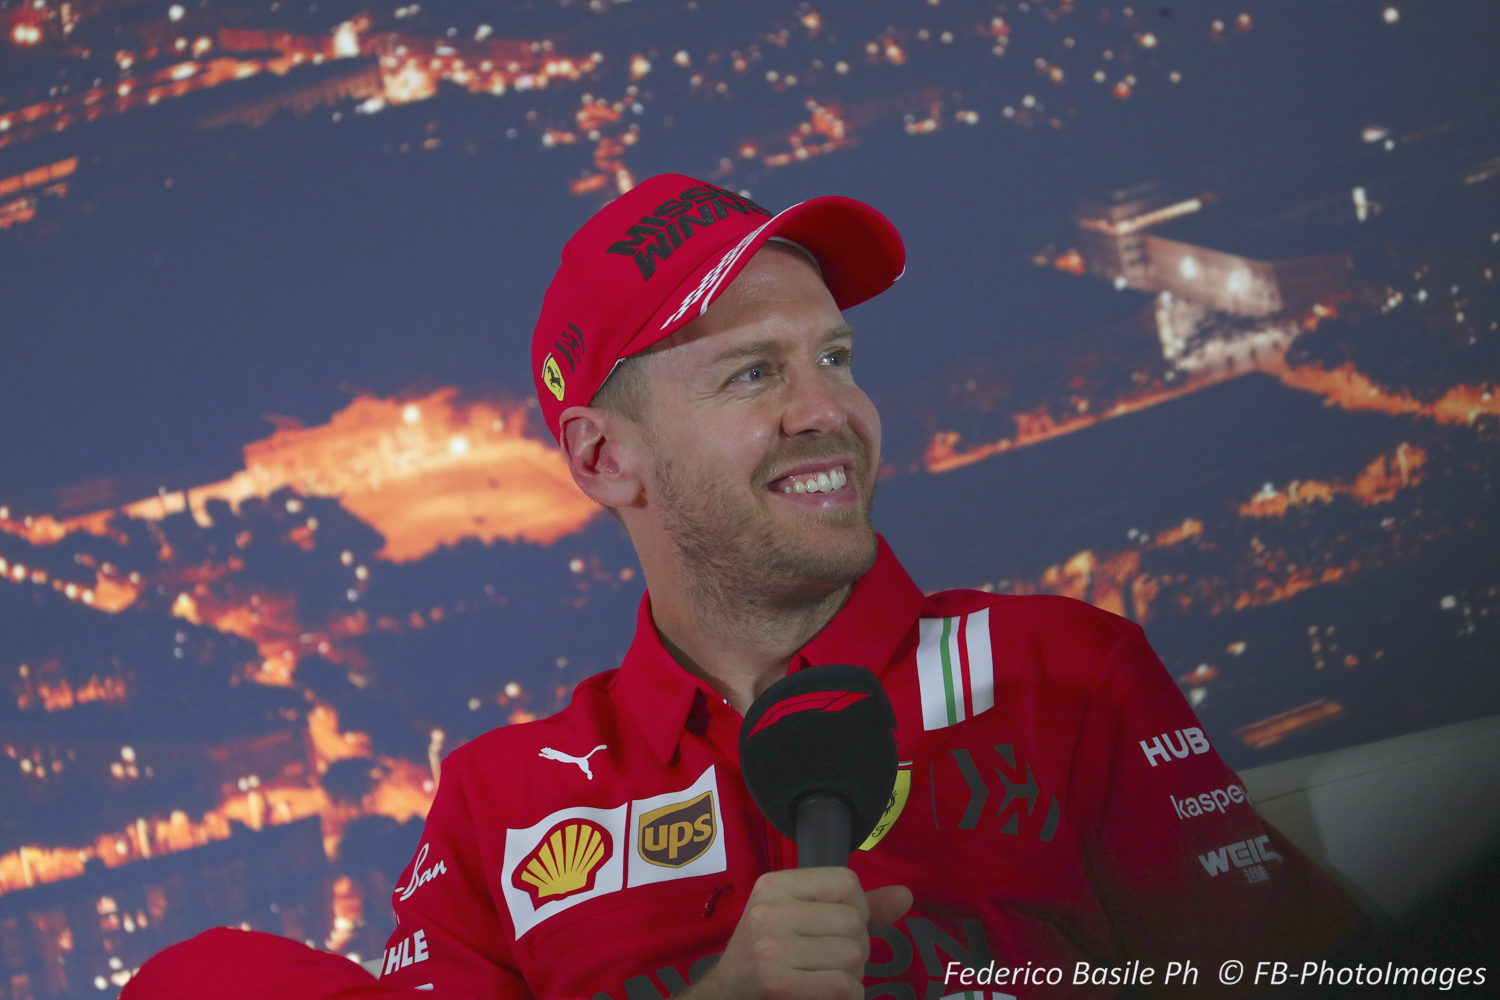 Talking to the media yesterday in Barcelona, Vettel dismisses retirement rumors